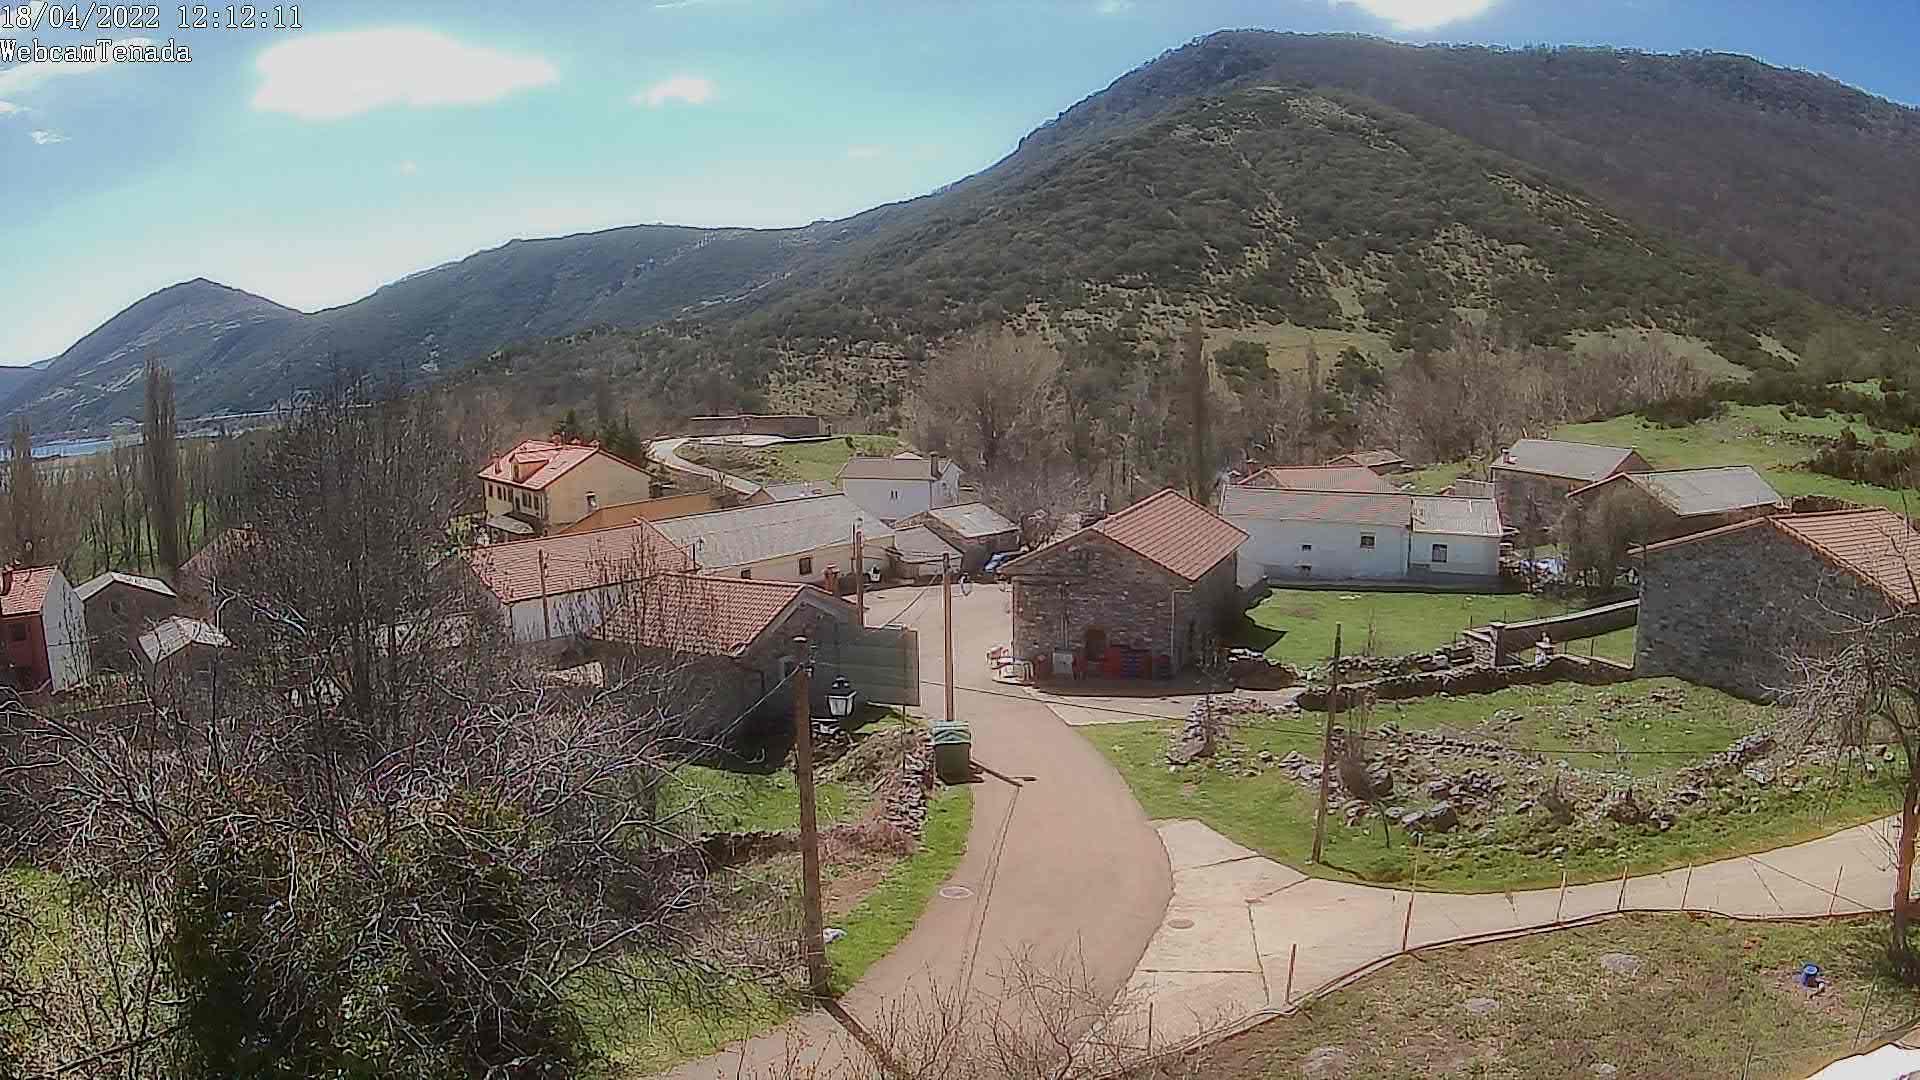 WebCam Panoramica HD situada en las Casas La Tenada. Se ve la plaza de Cardaño de Abajo y el pantano.